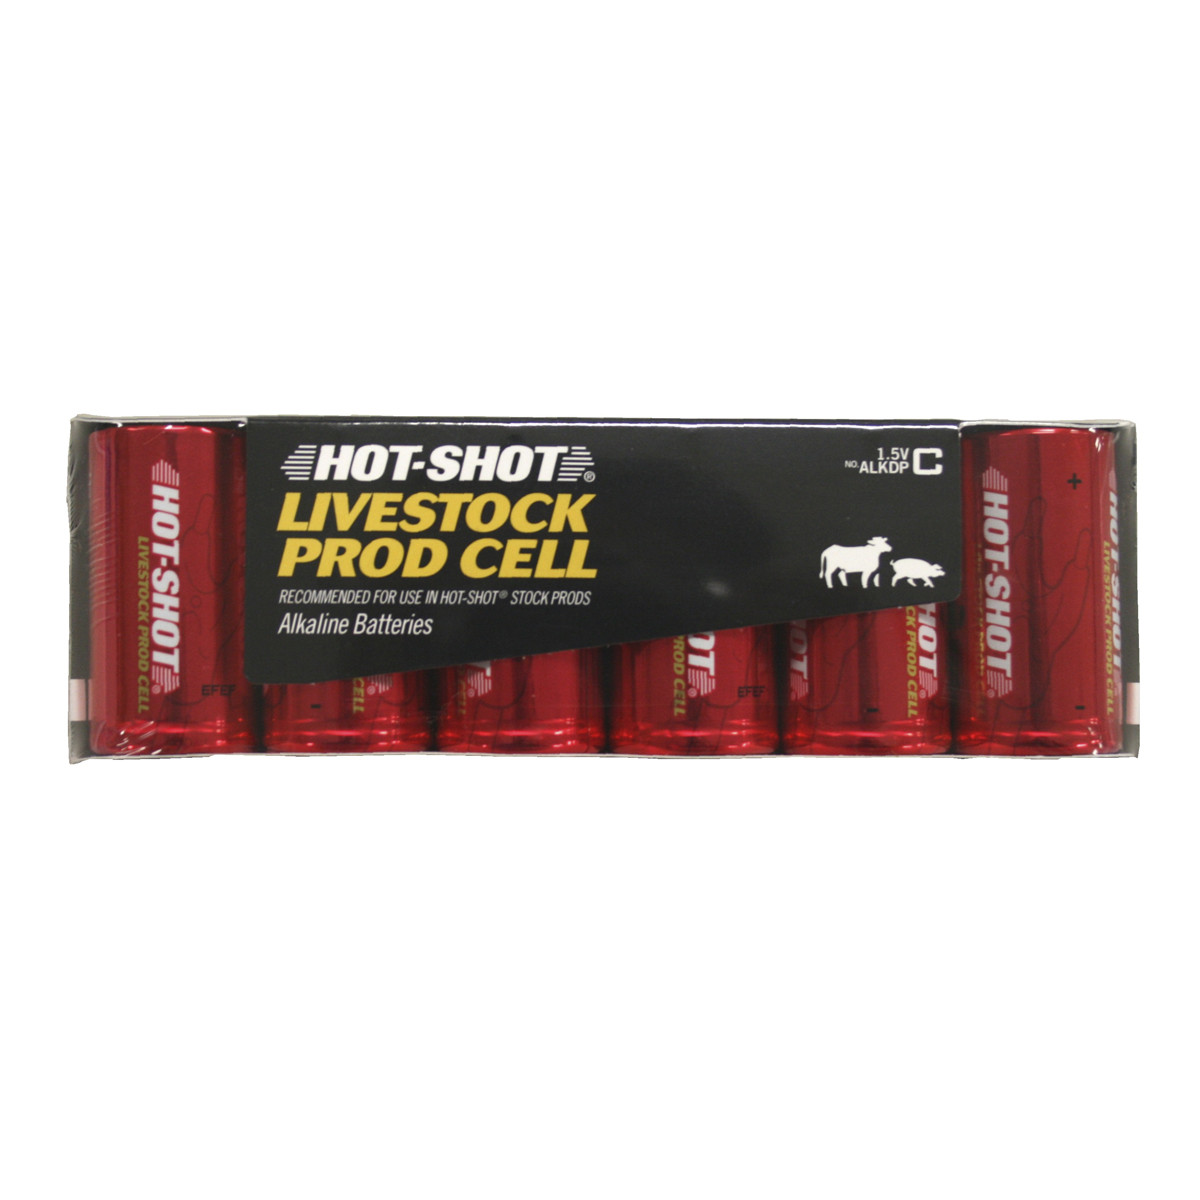 Stock Prod 15V Alkaline Batteries